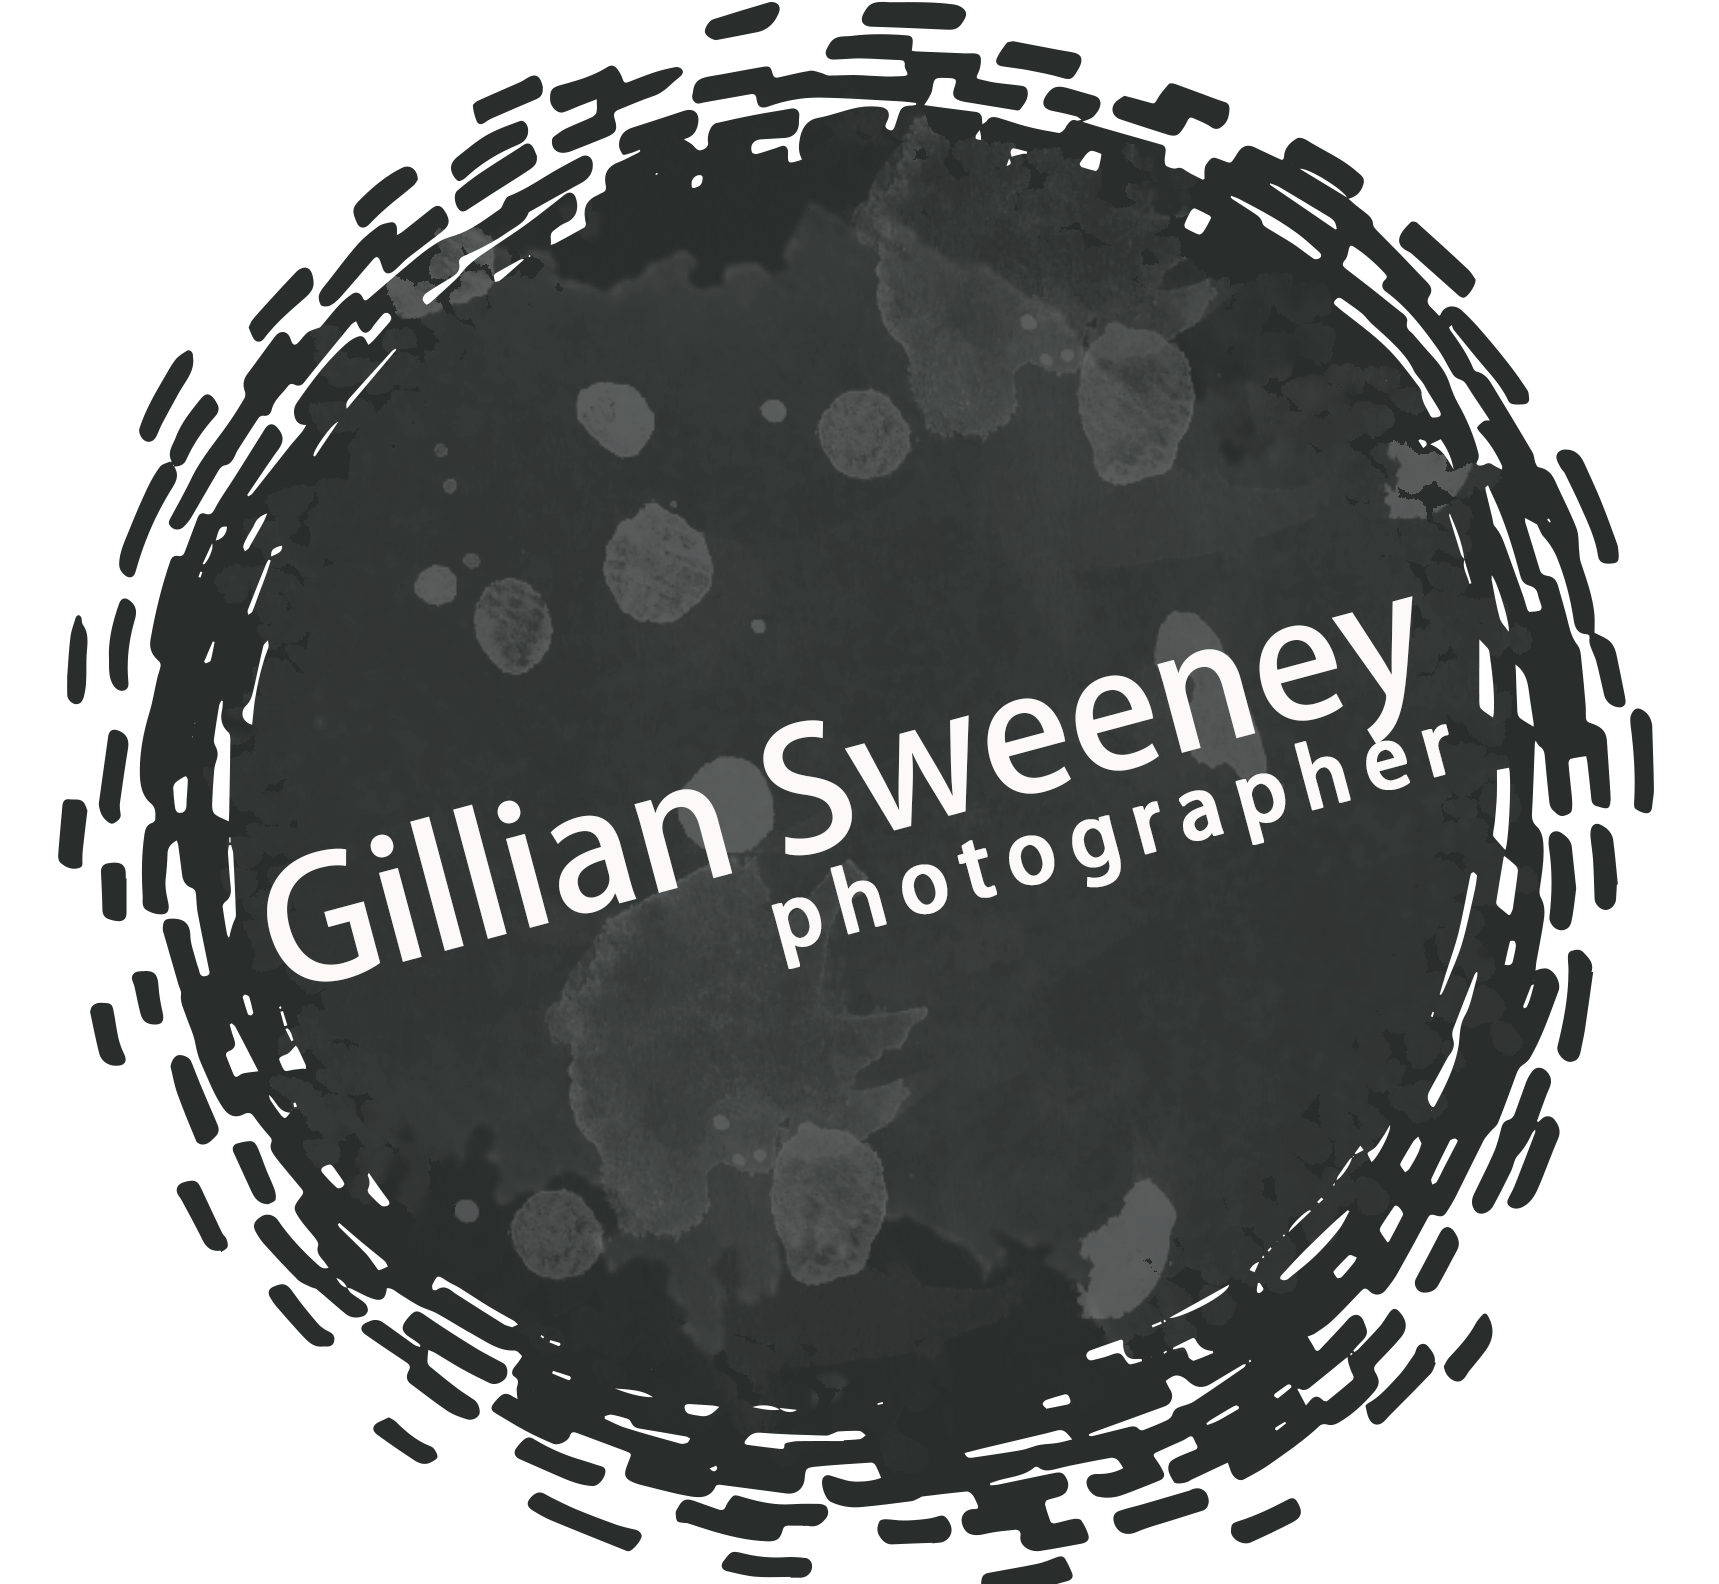 Gillian Sweeney